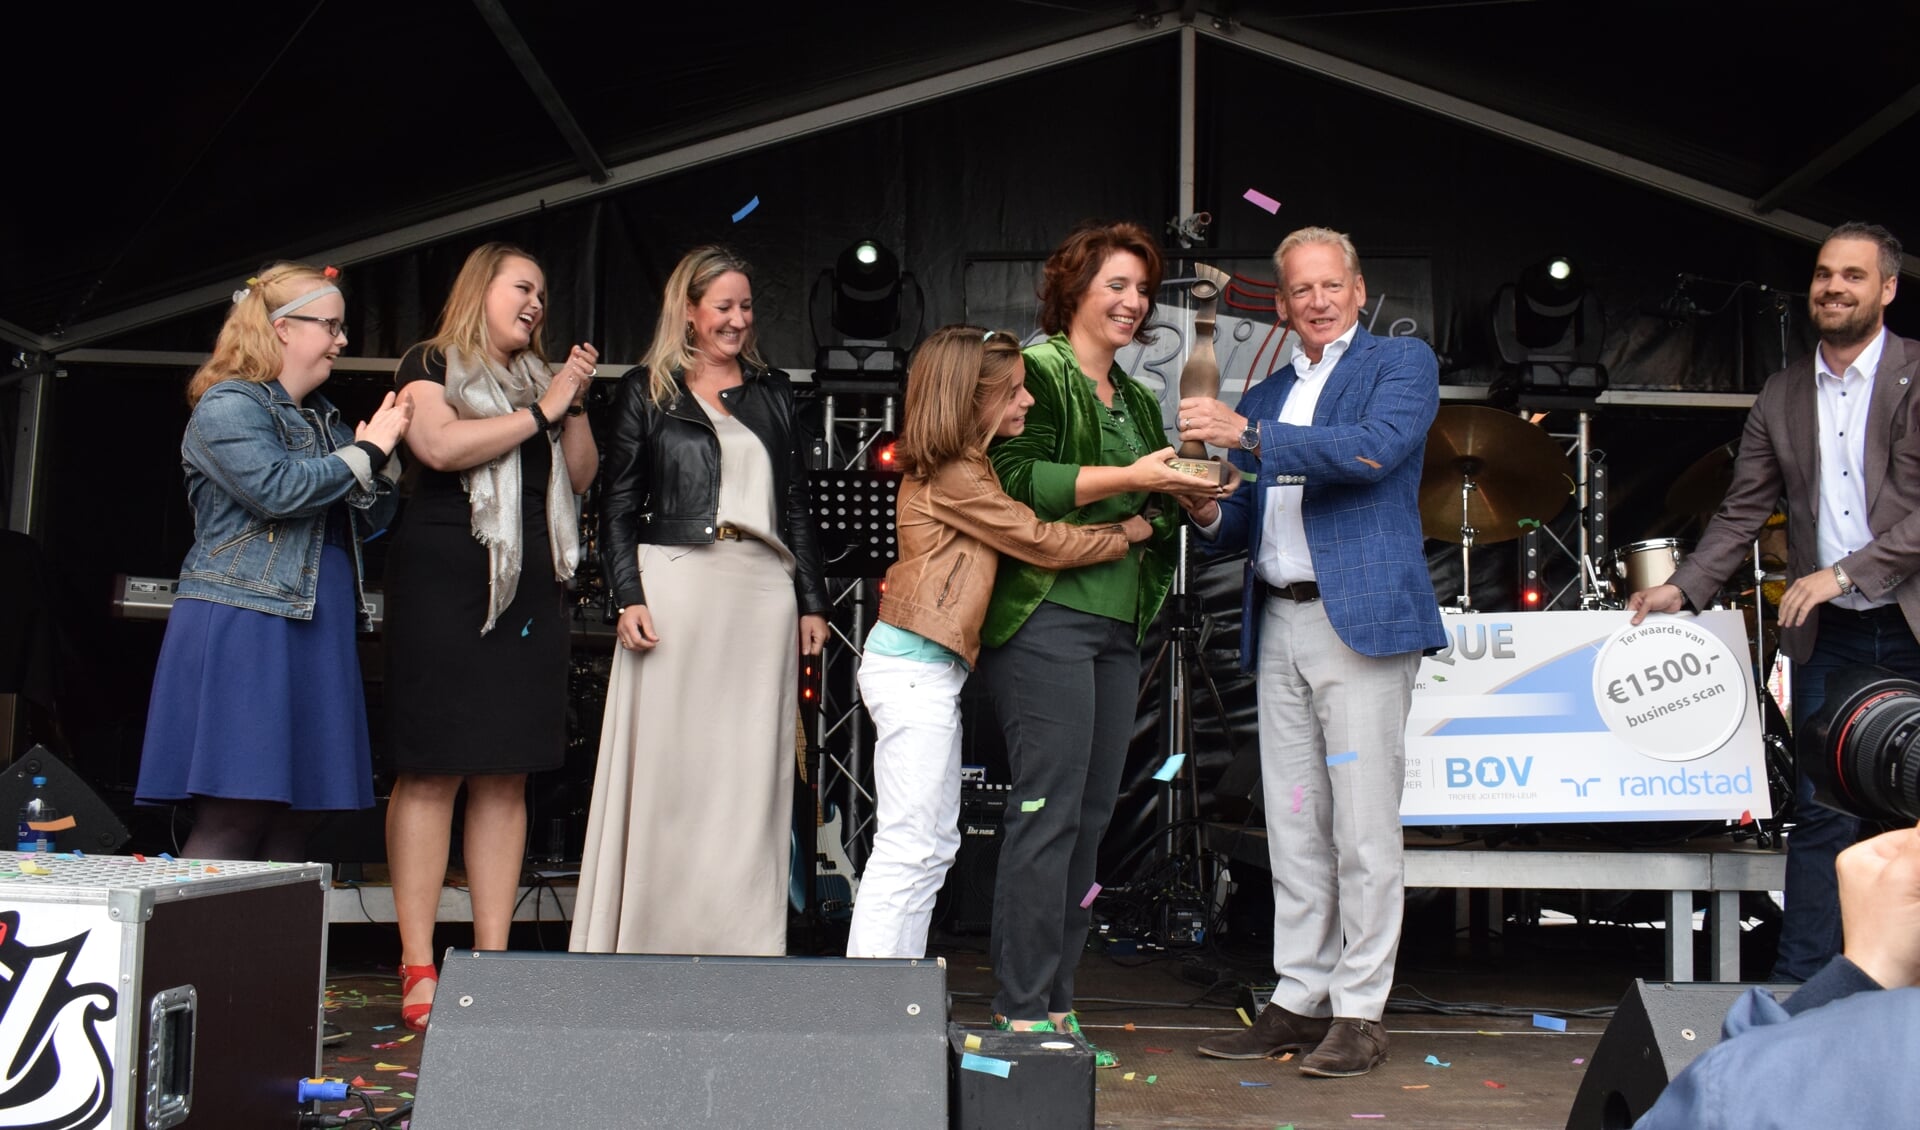 Babice van de Ven, met dochter Fien, van Praxis krijgt de BOV trofee 2019 overhandigd door Edgar Nelemans. 